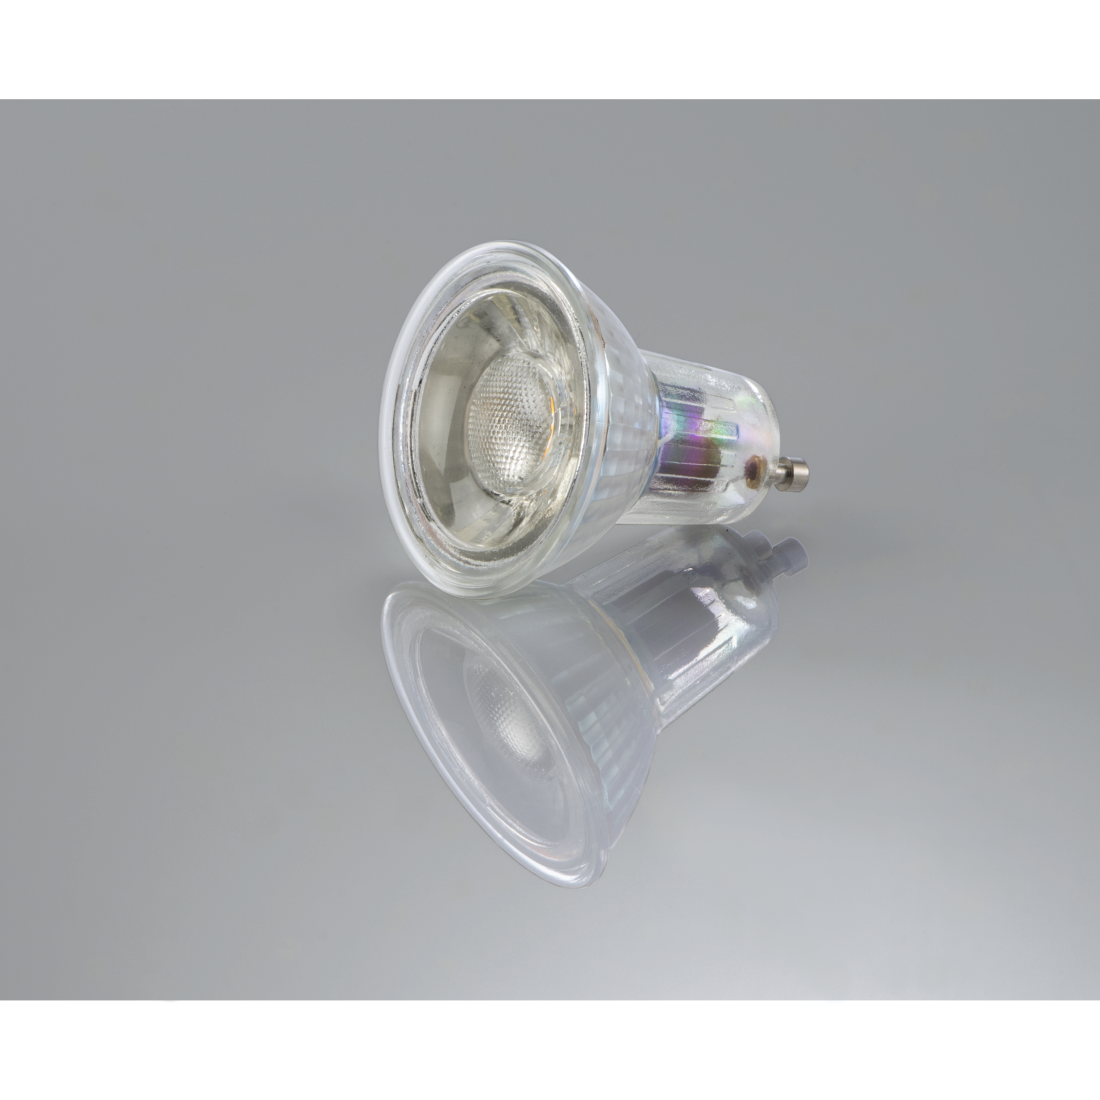 abx3 High-Res Image 3 - Xavax, Ampoule LED, GU10, 445lm remp. 60W, amp. réfl. PAR16, bl. chd., verre